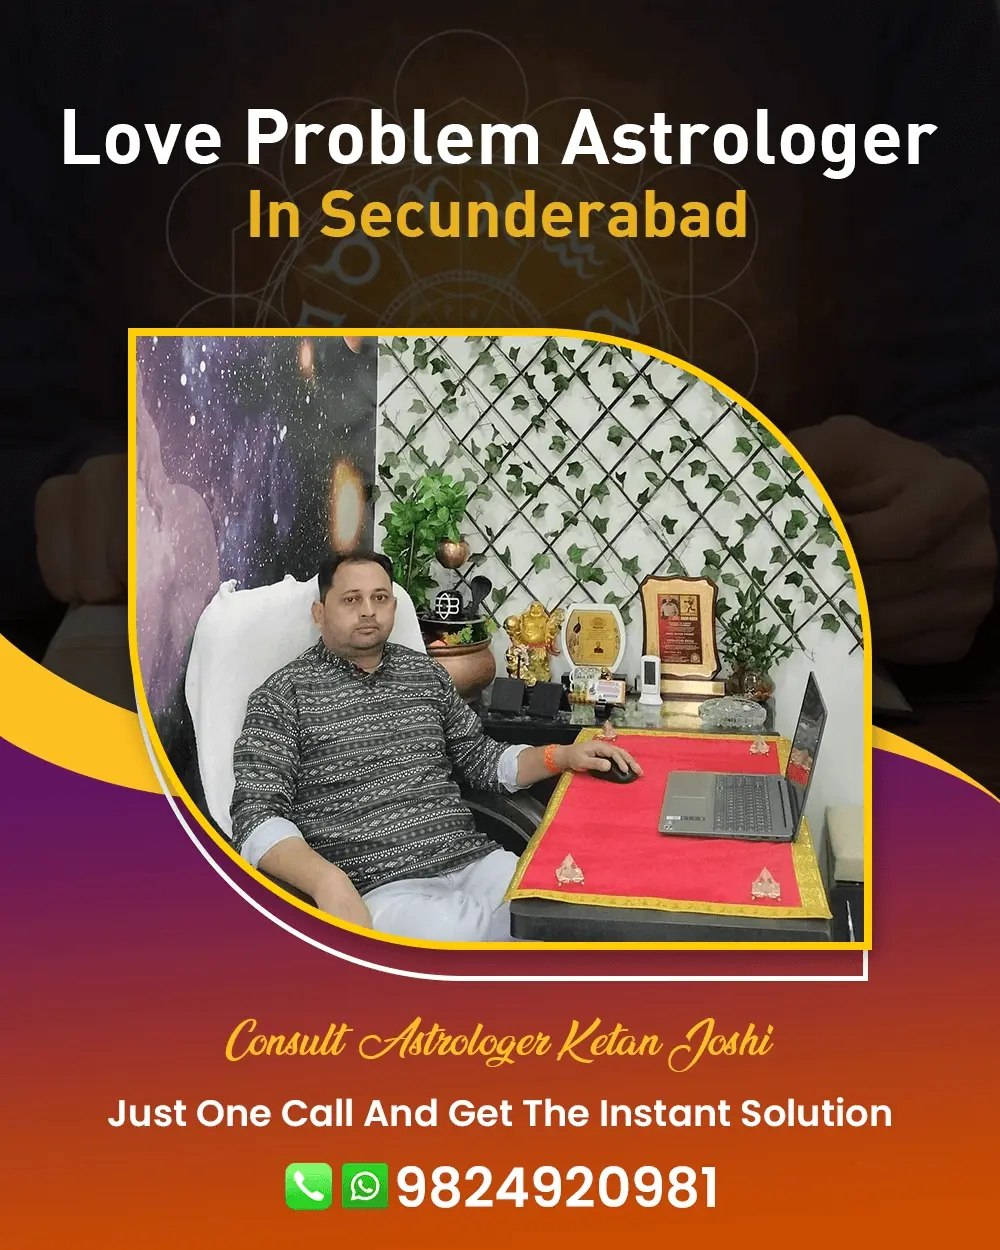 Love Problem Astrologer In Secunderabad